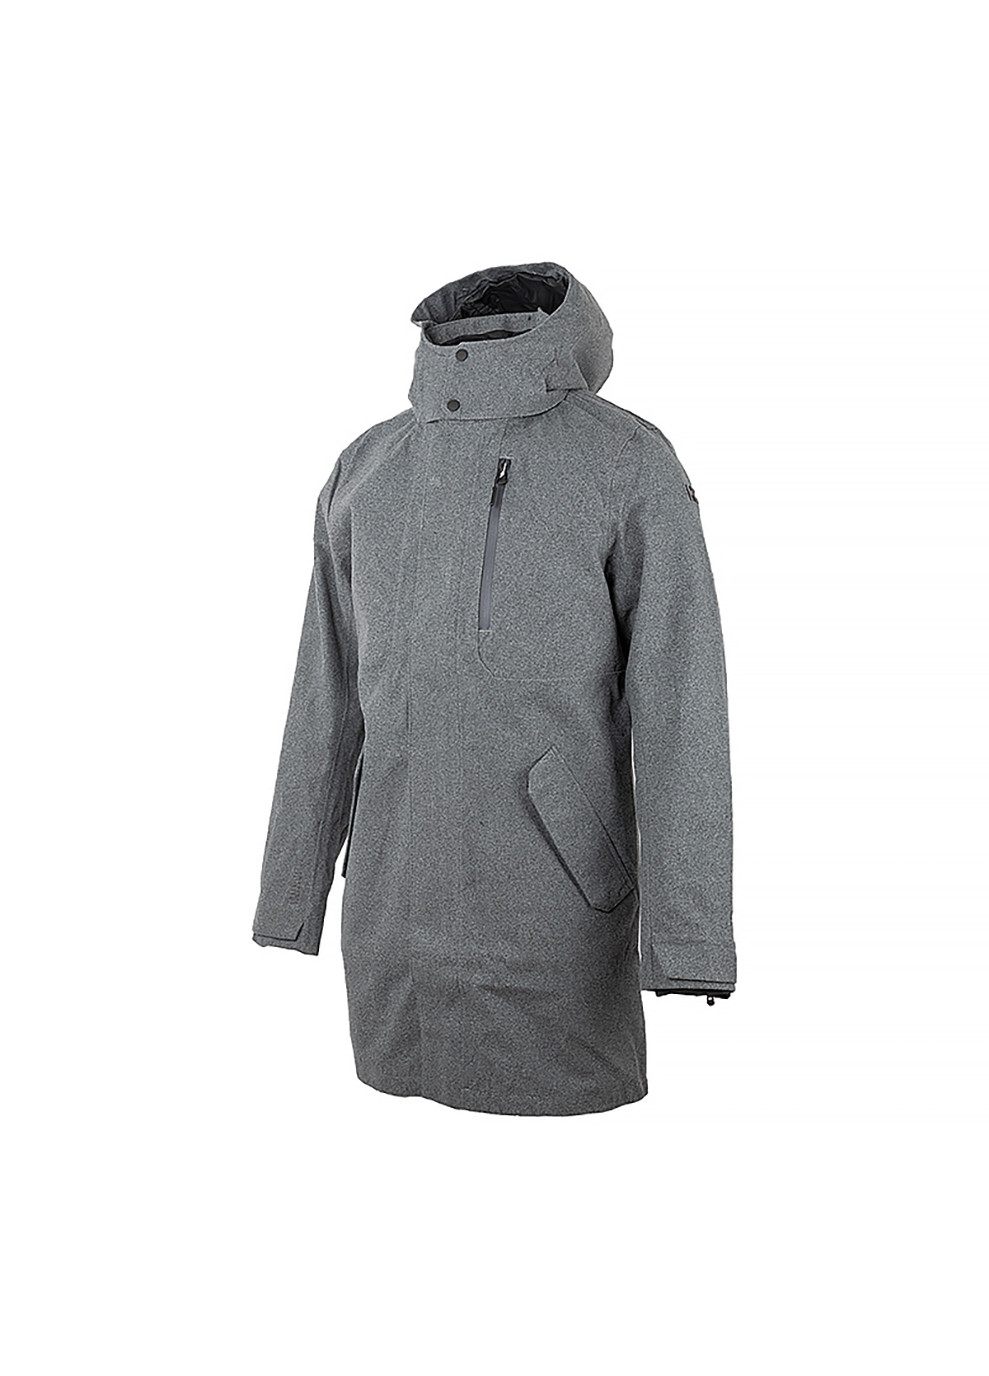 Серая демисезонная мужская куртка urb lab helsinki 3-in-1 coat серый m (53850-964 m) Helly Hansen